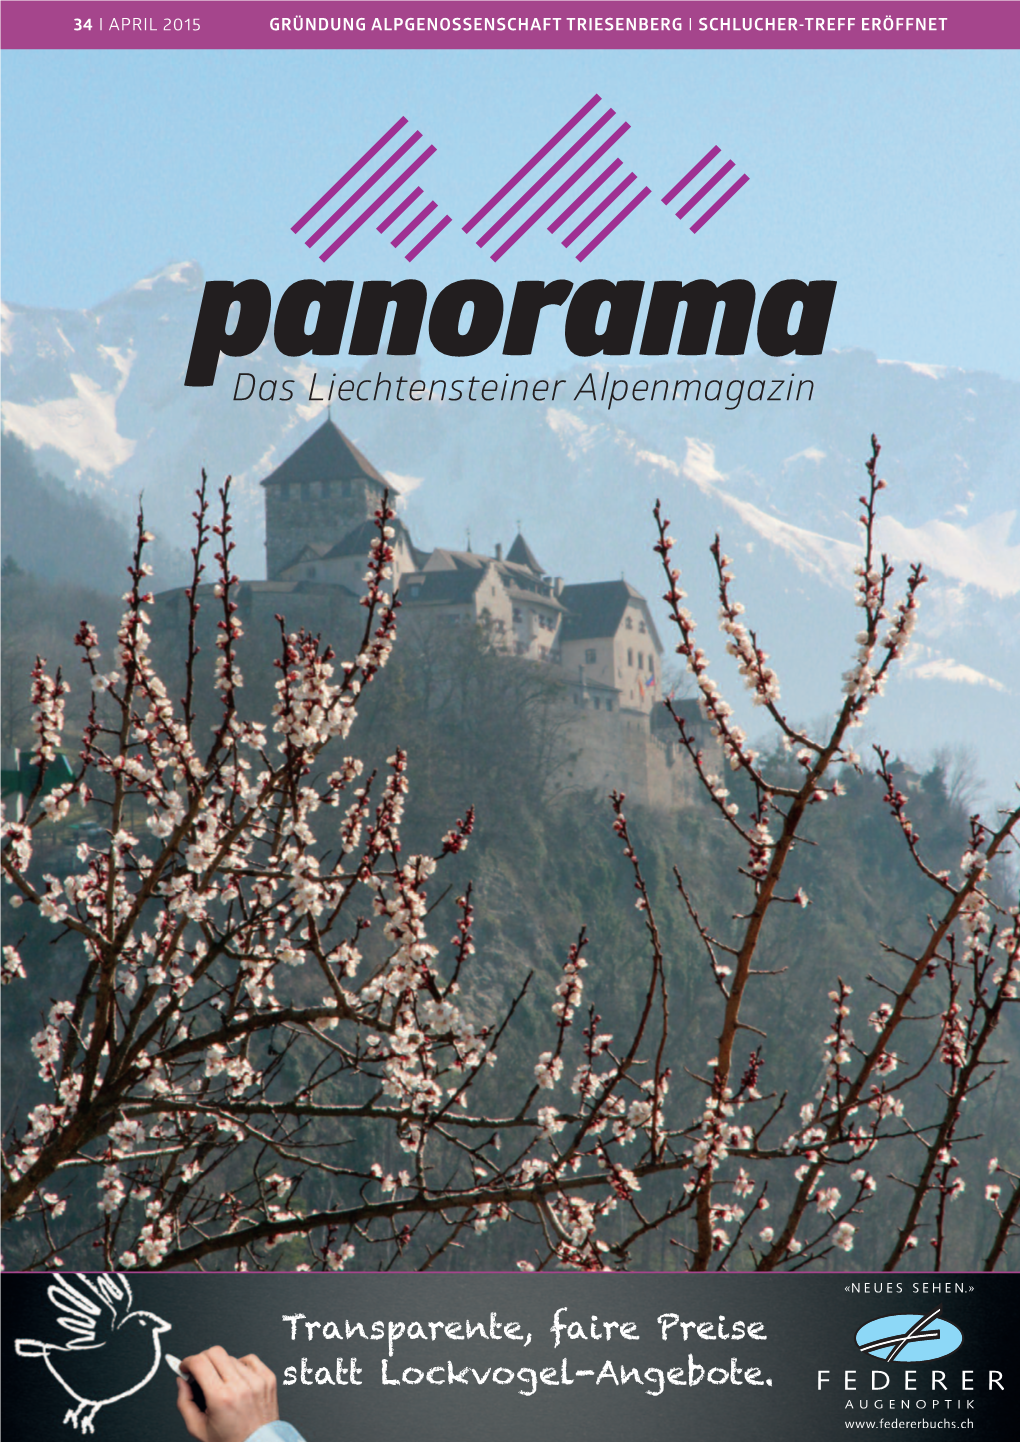 Das Liechtensteiner Alpenmagazin